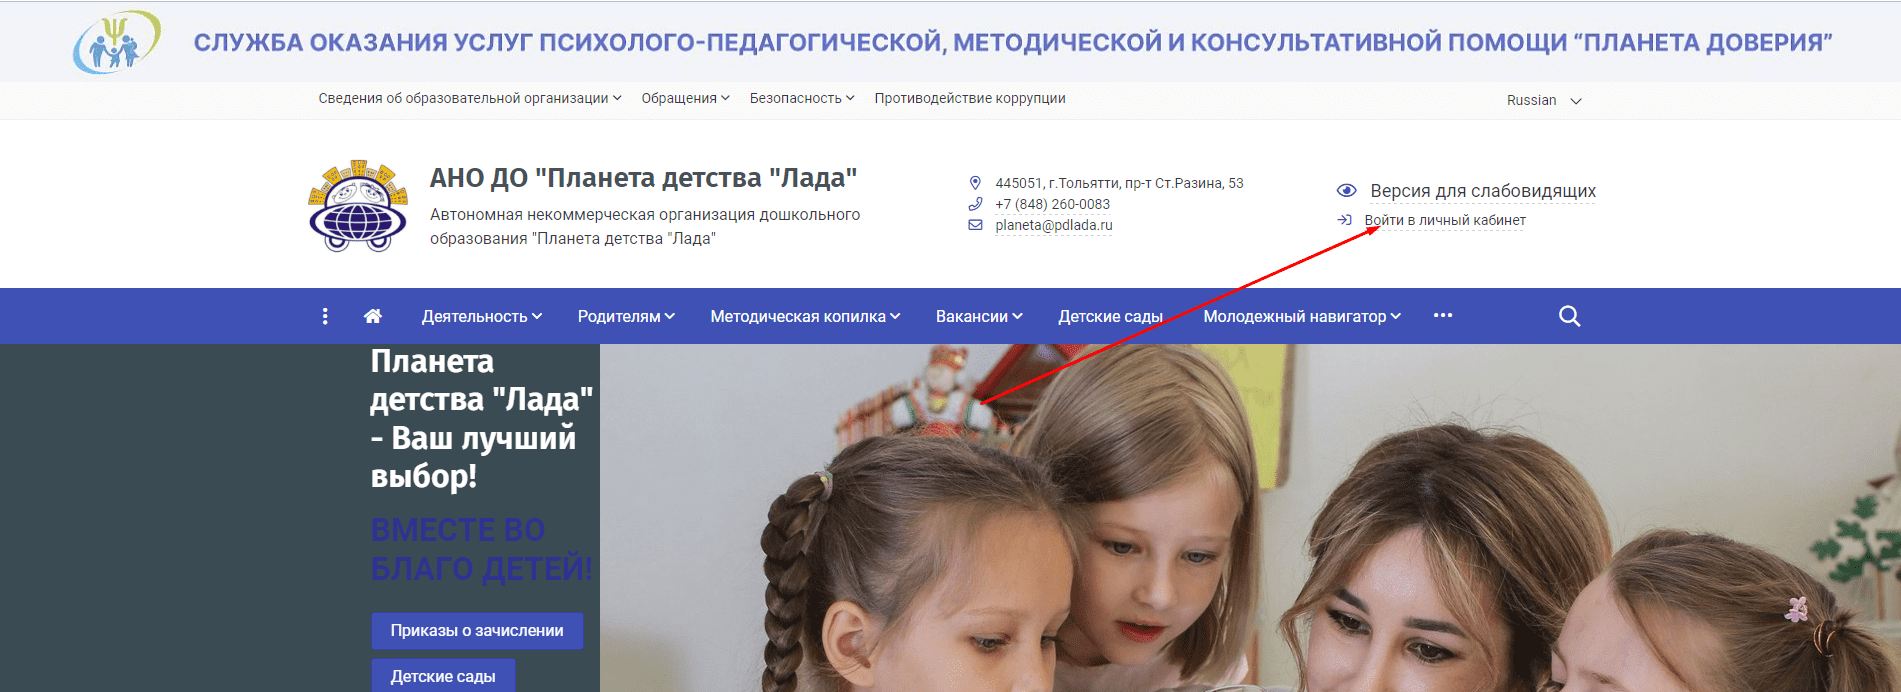 Планета детства Лада (pdlada.ru)